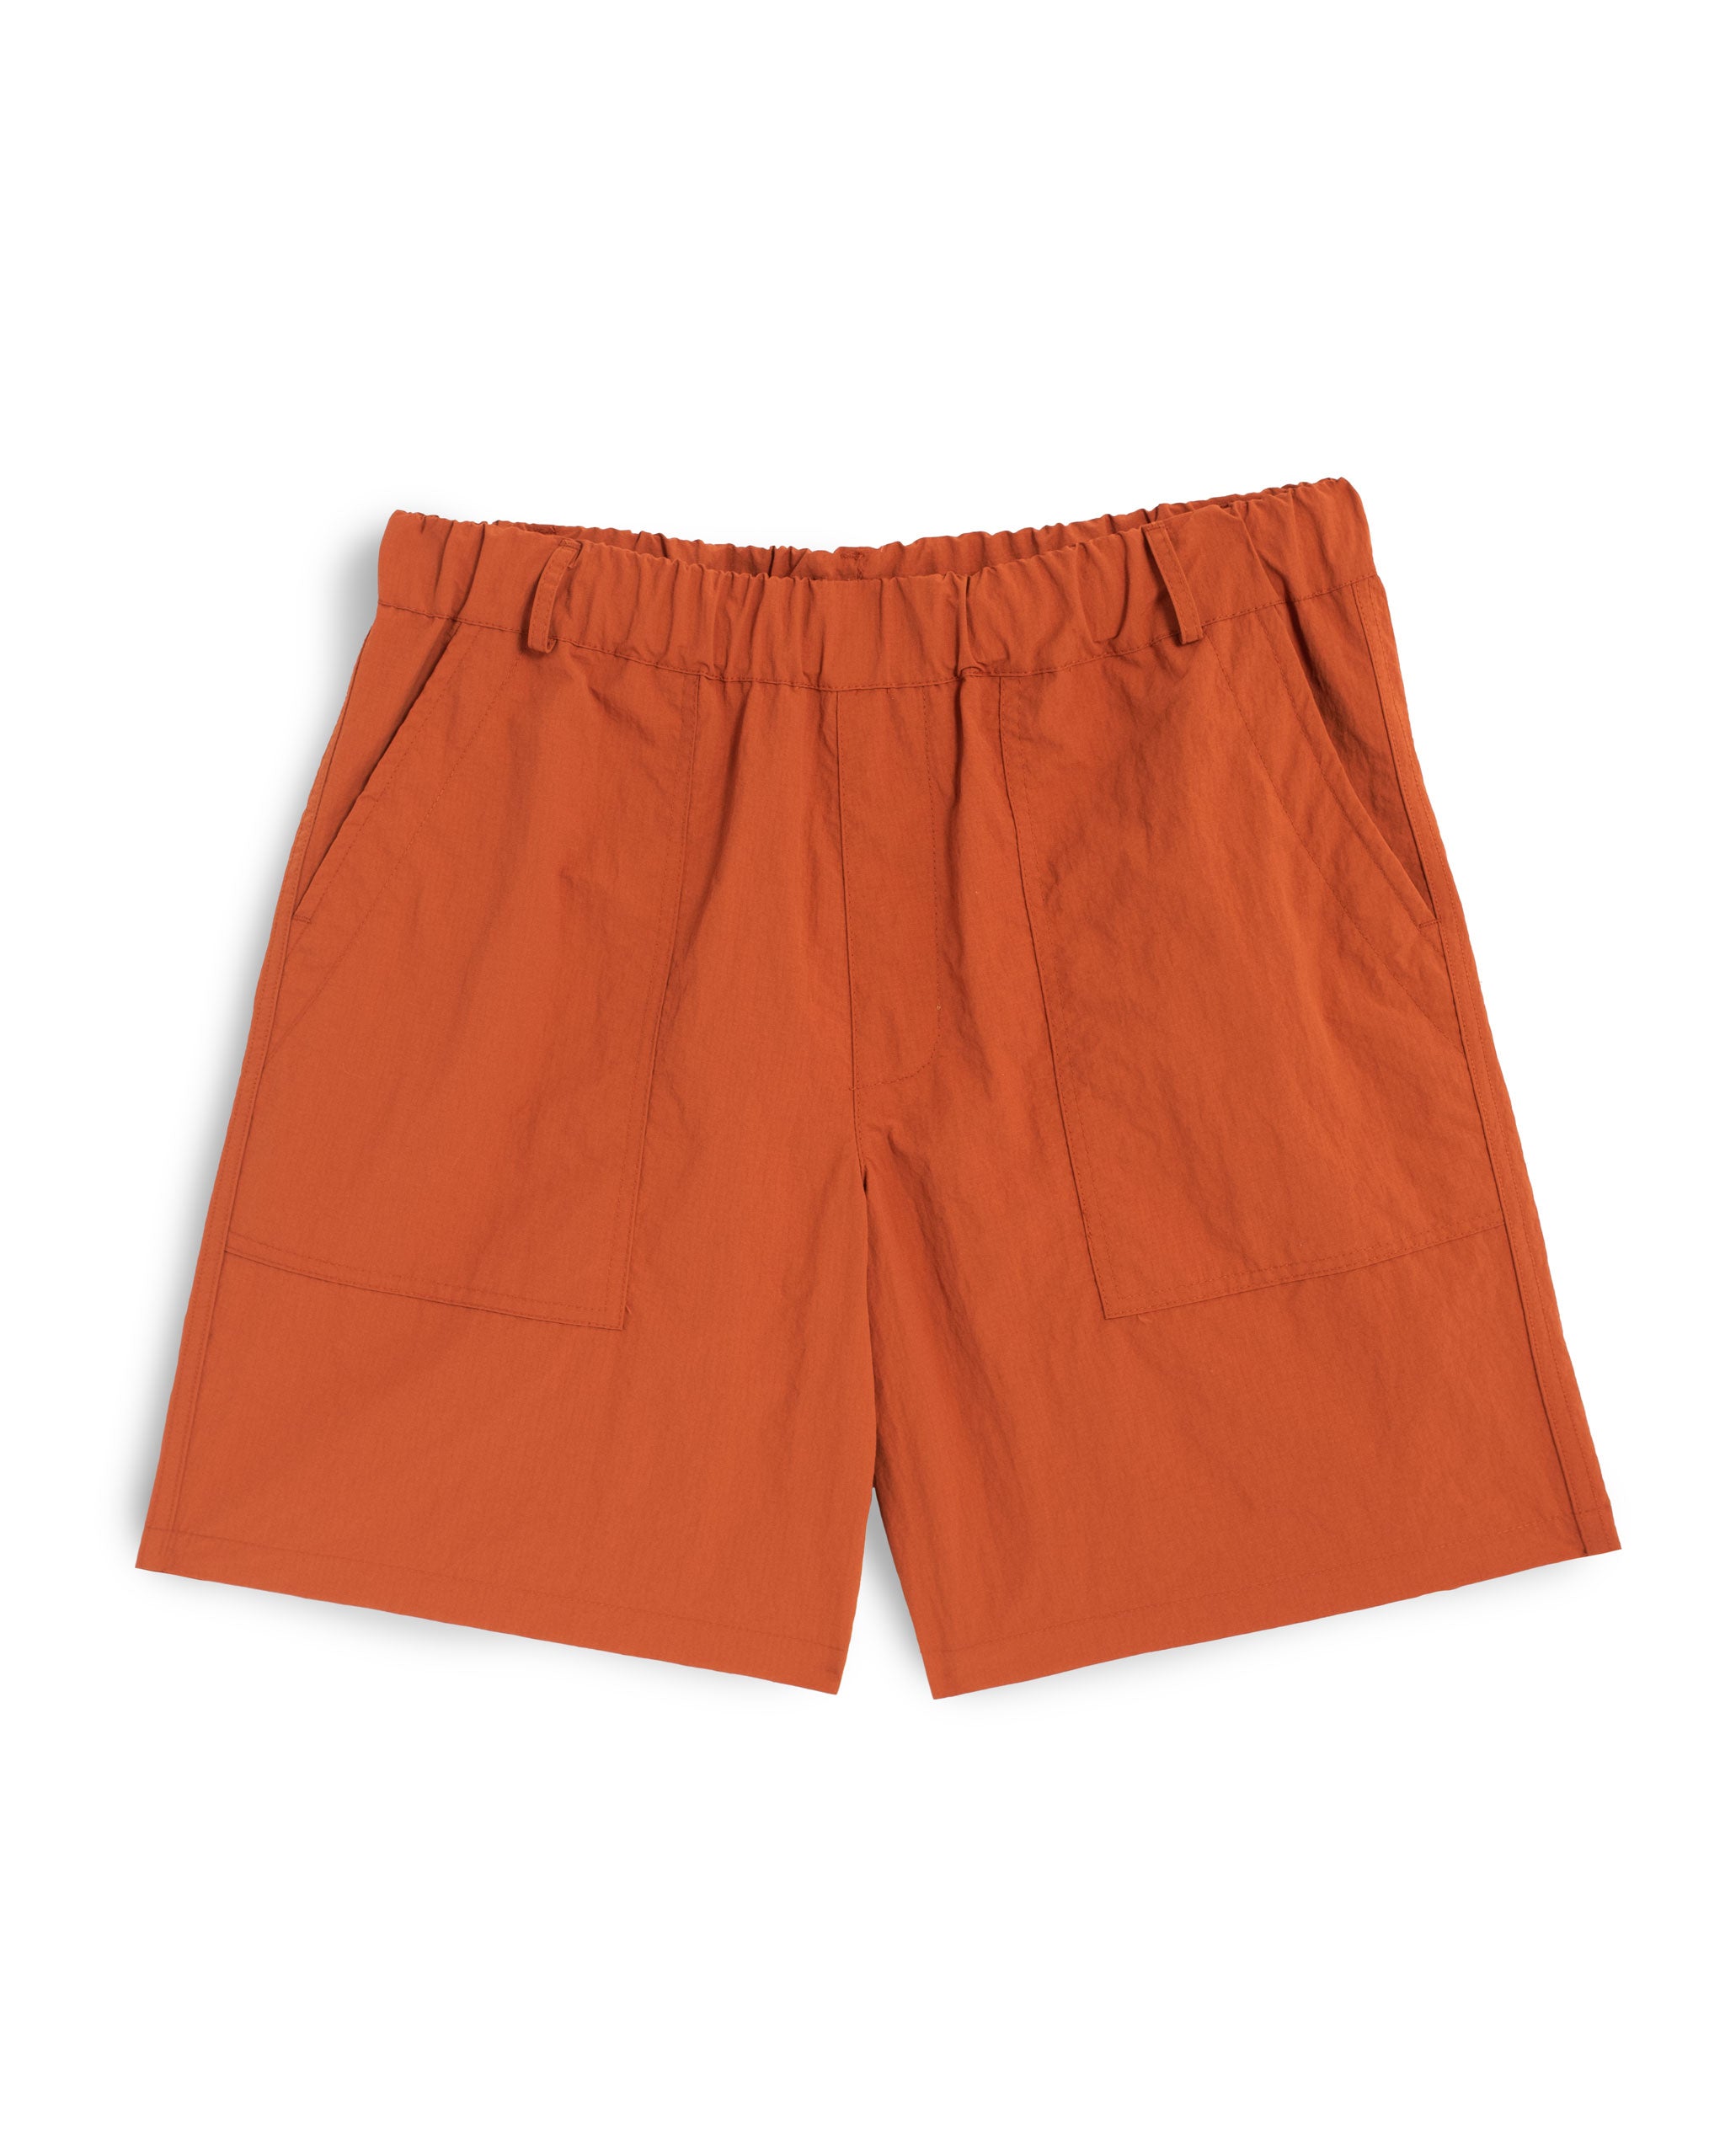 Solid Orange nylon utility shorts